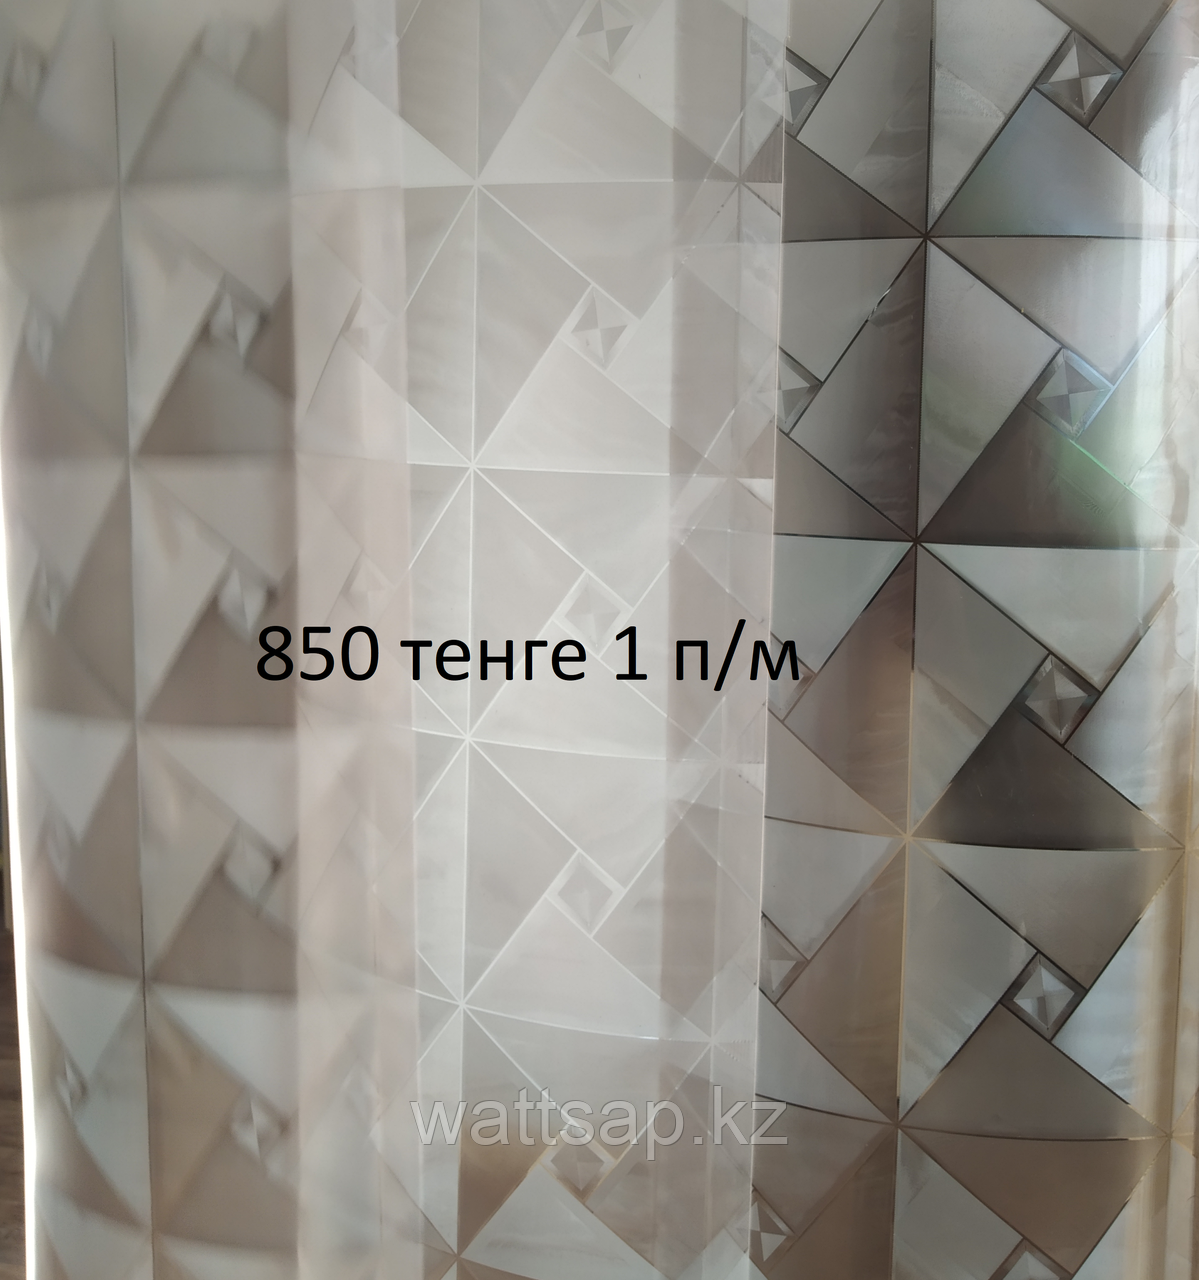 Ленточные шторы, теплоизолирующие завесы из ПВХ с матовым рисунком ширина 20см, толщина 1,2 мм